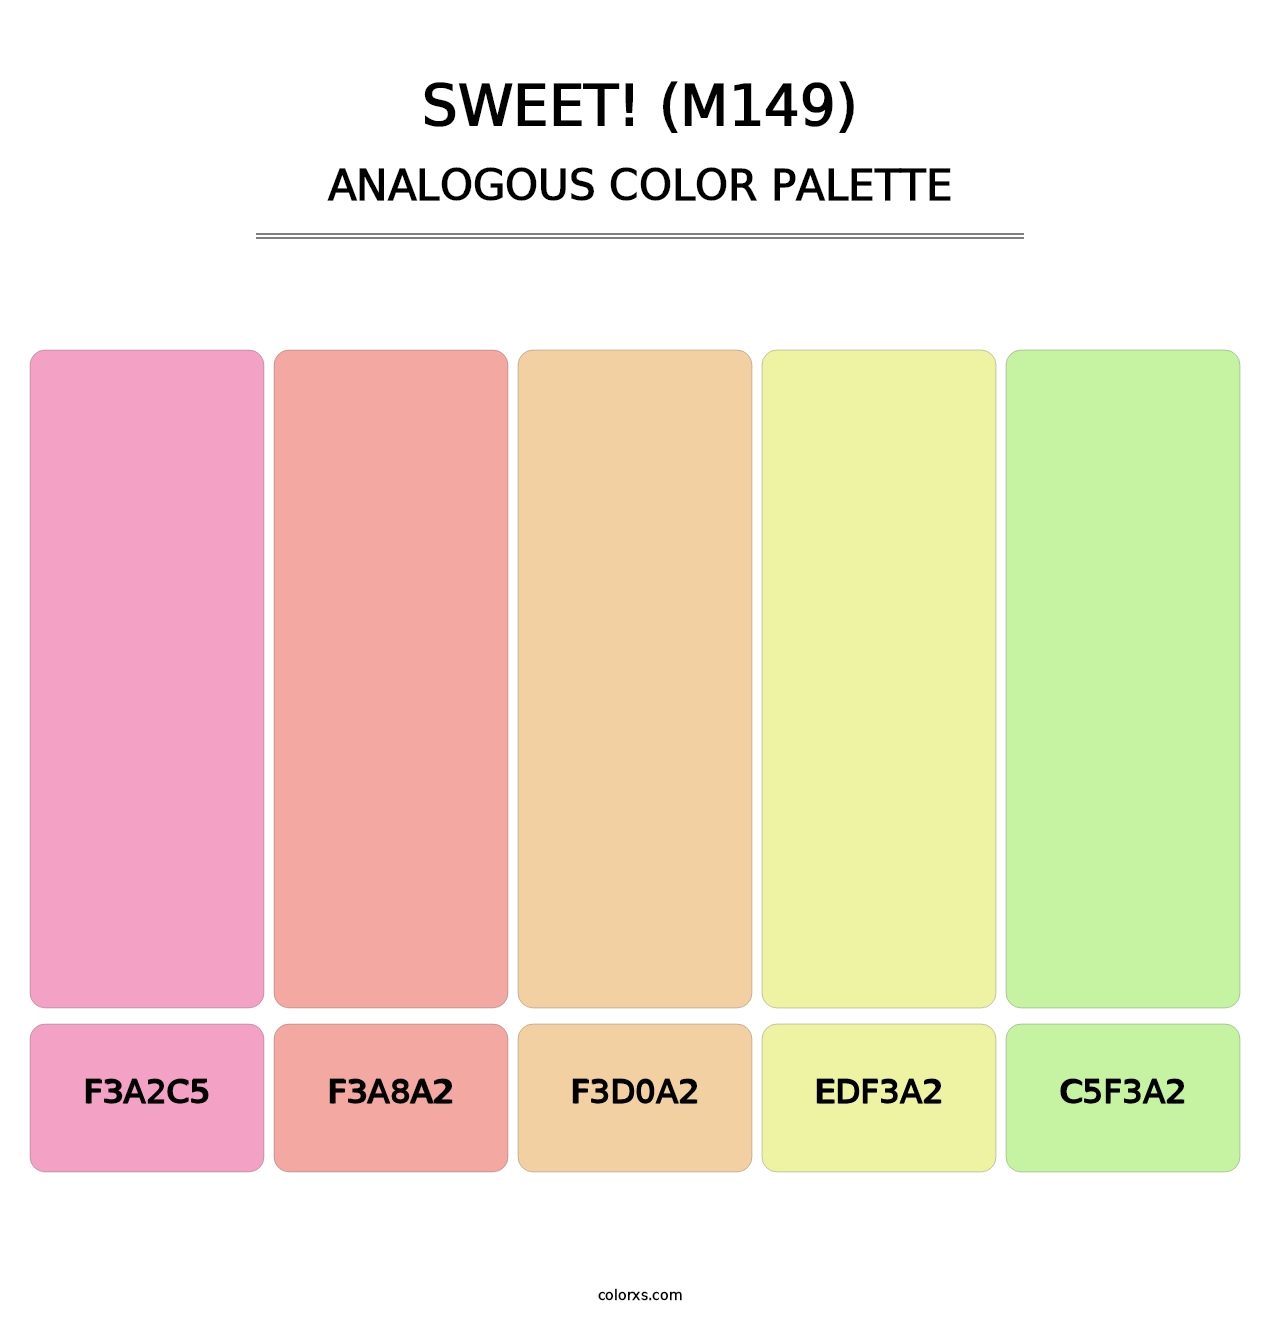 sweet! (M149) - Analogous Color Palette